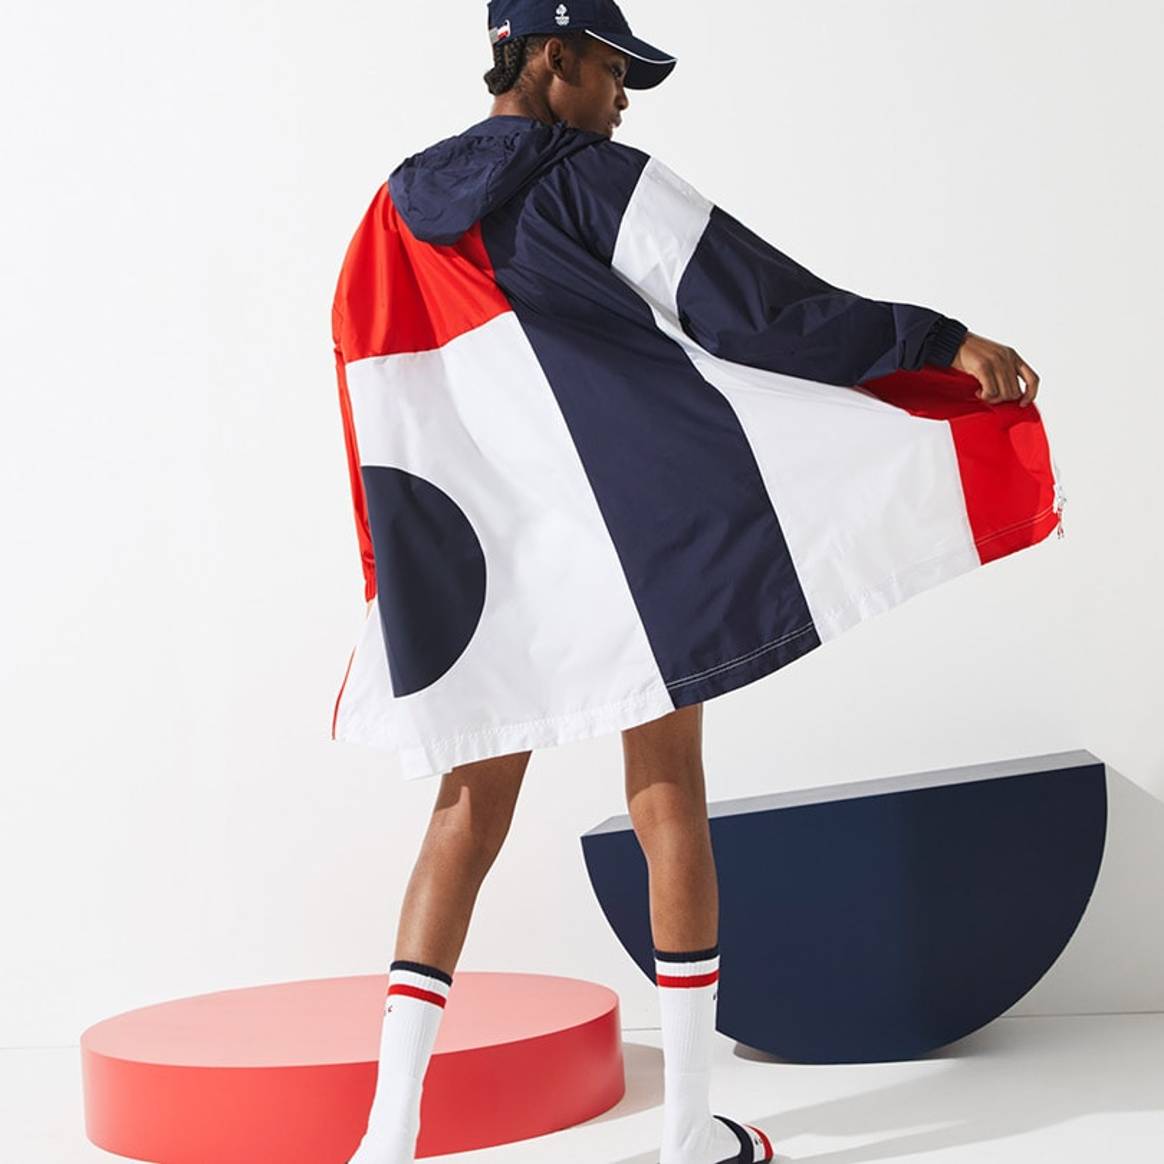 Lacoste представил коллекцию спортивной одежды с графическим дизайном